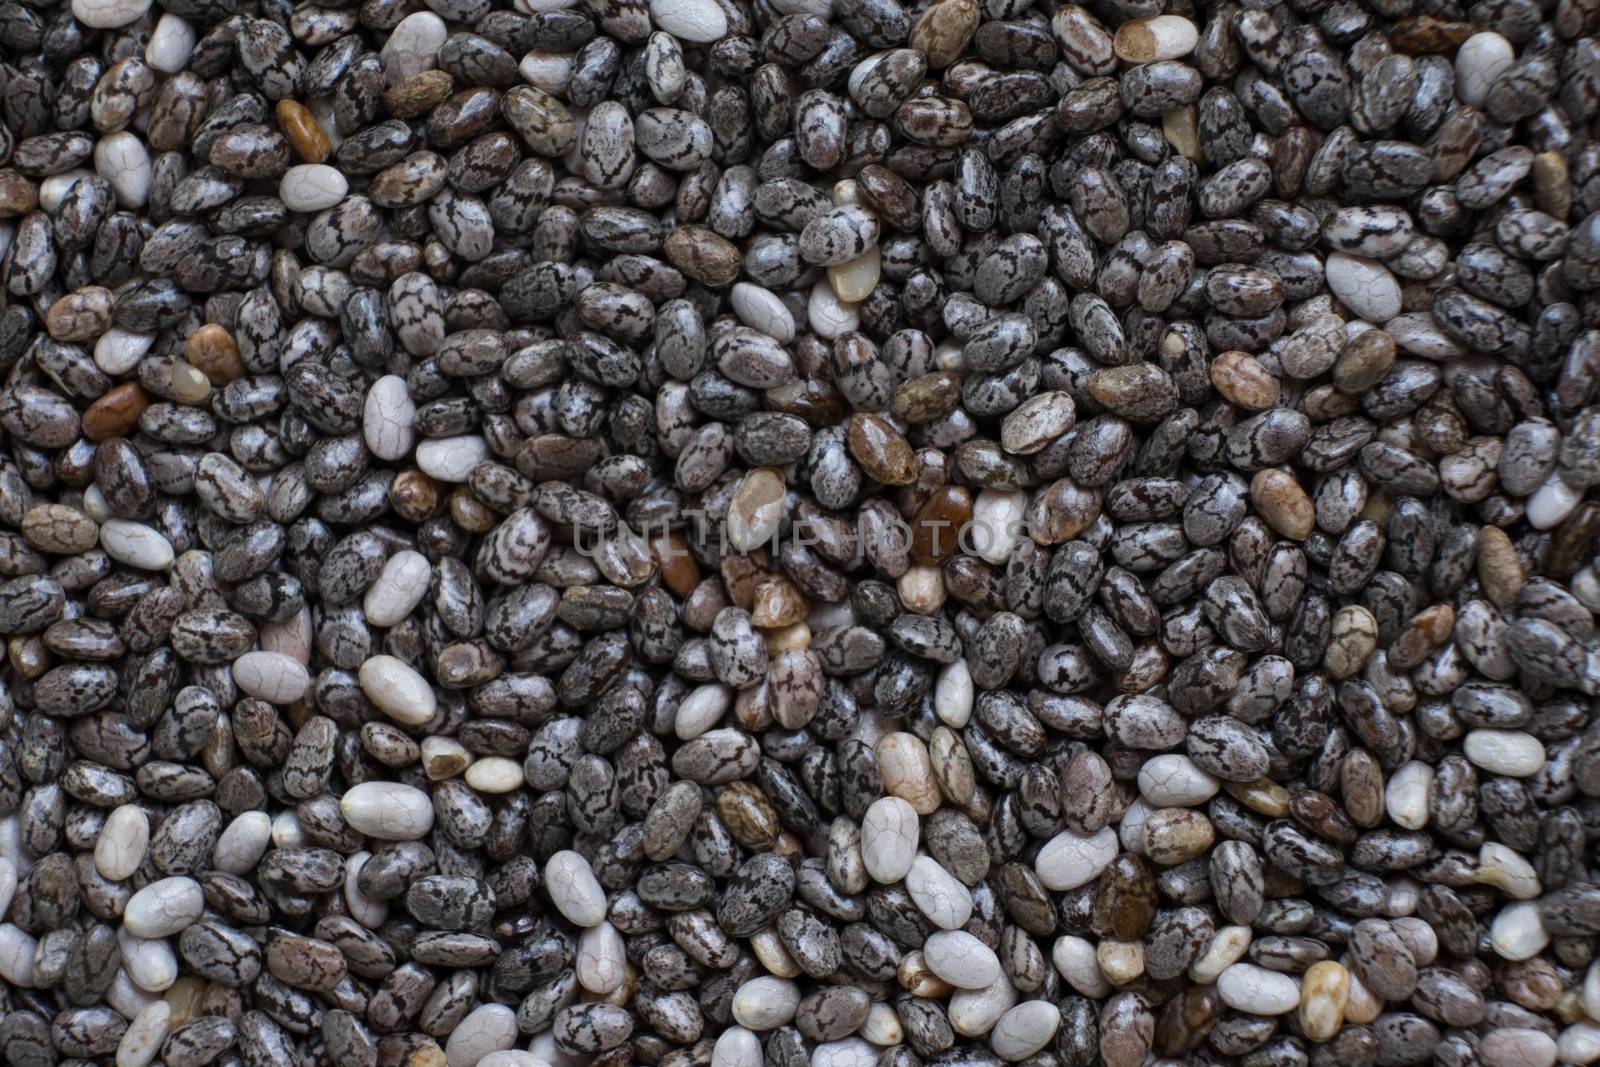 Closeup of Chia seeds